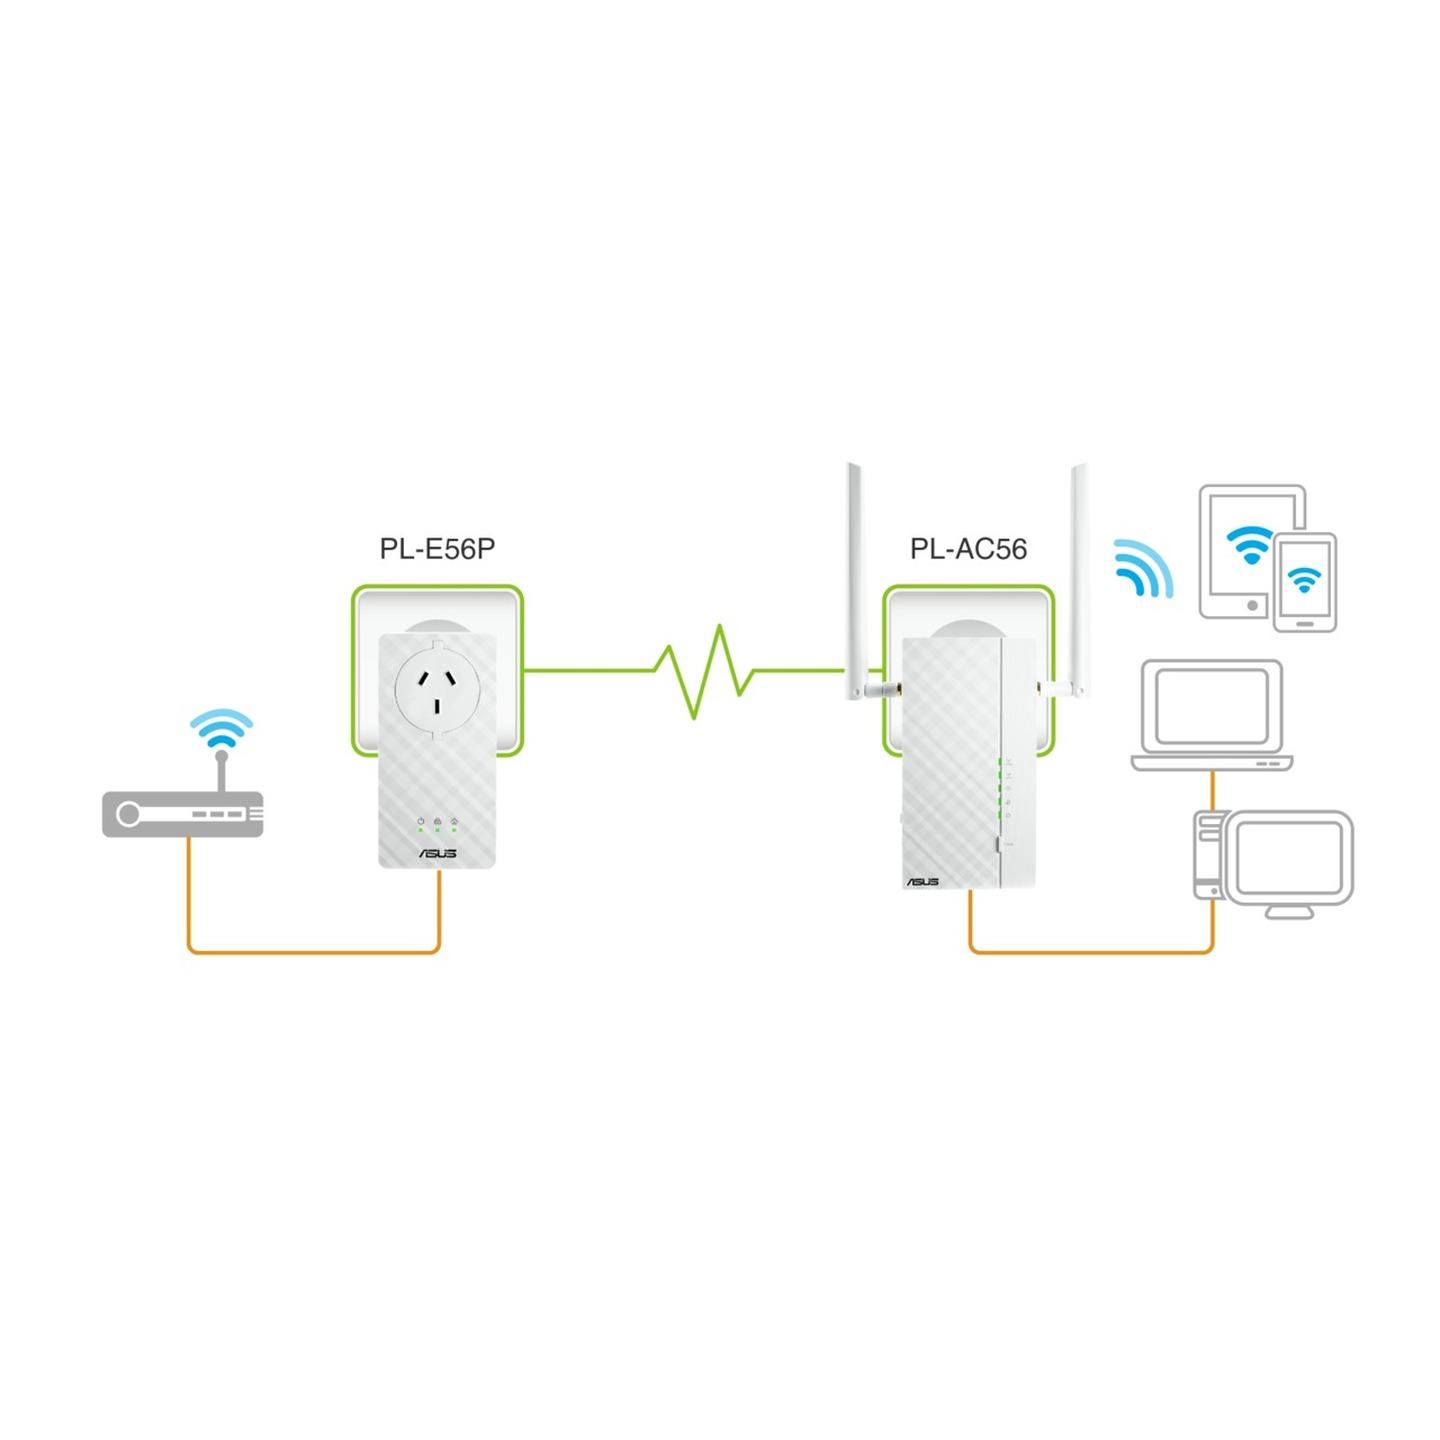 ASUS AV2 Ethernet Over Power Wi-Fi Kit